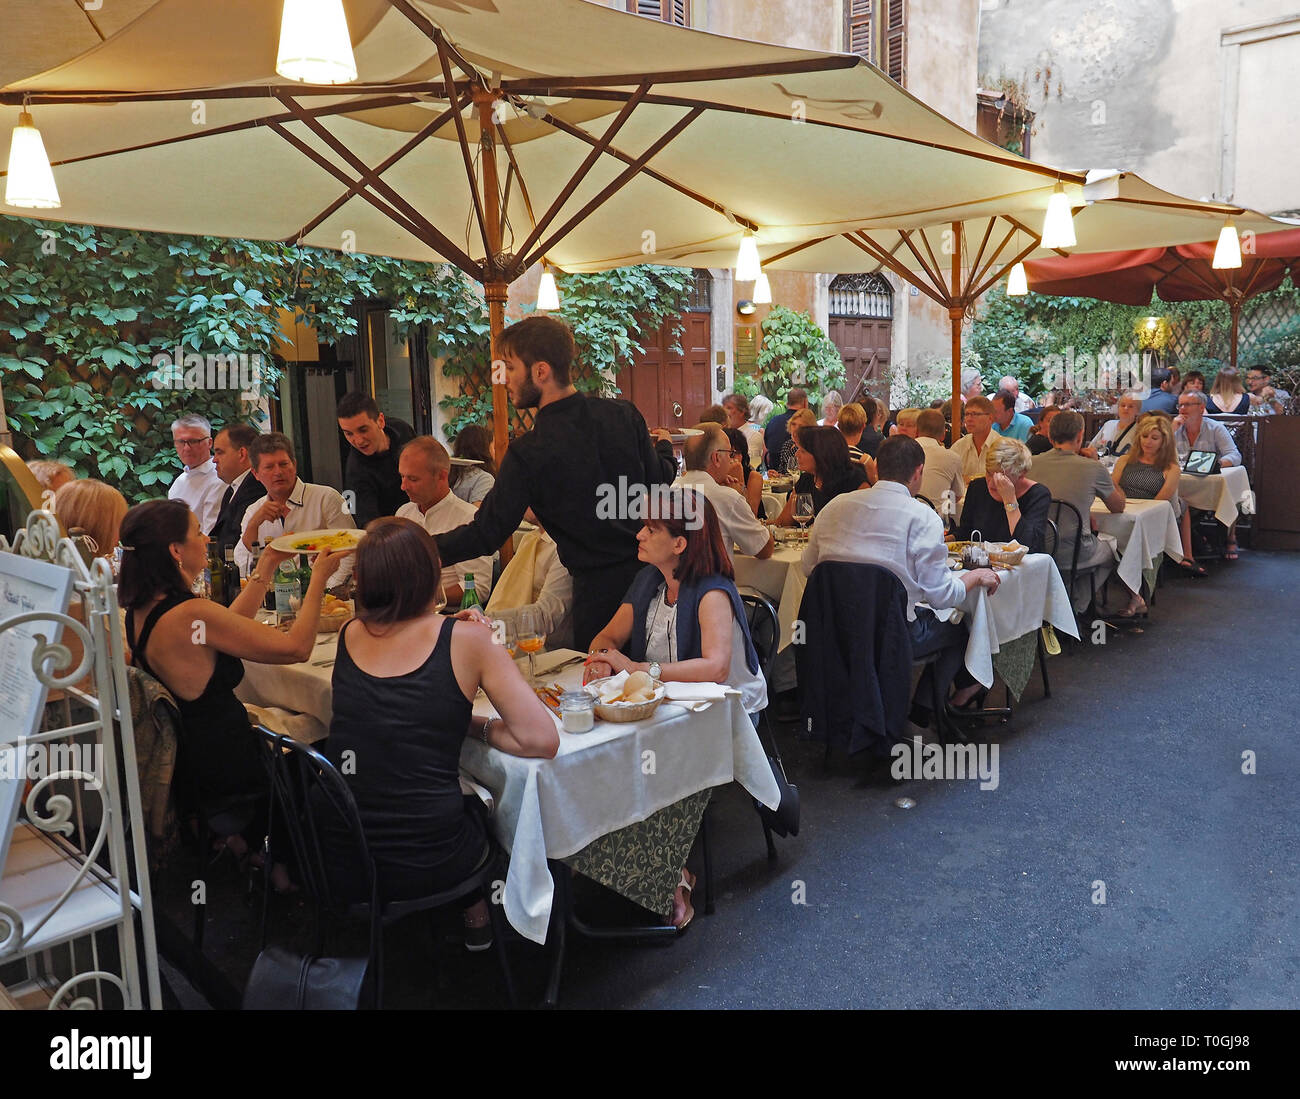 Europa, Italia, Venecia, Verona, restaurante típico en el centro histórico Foto de stock